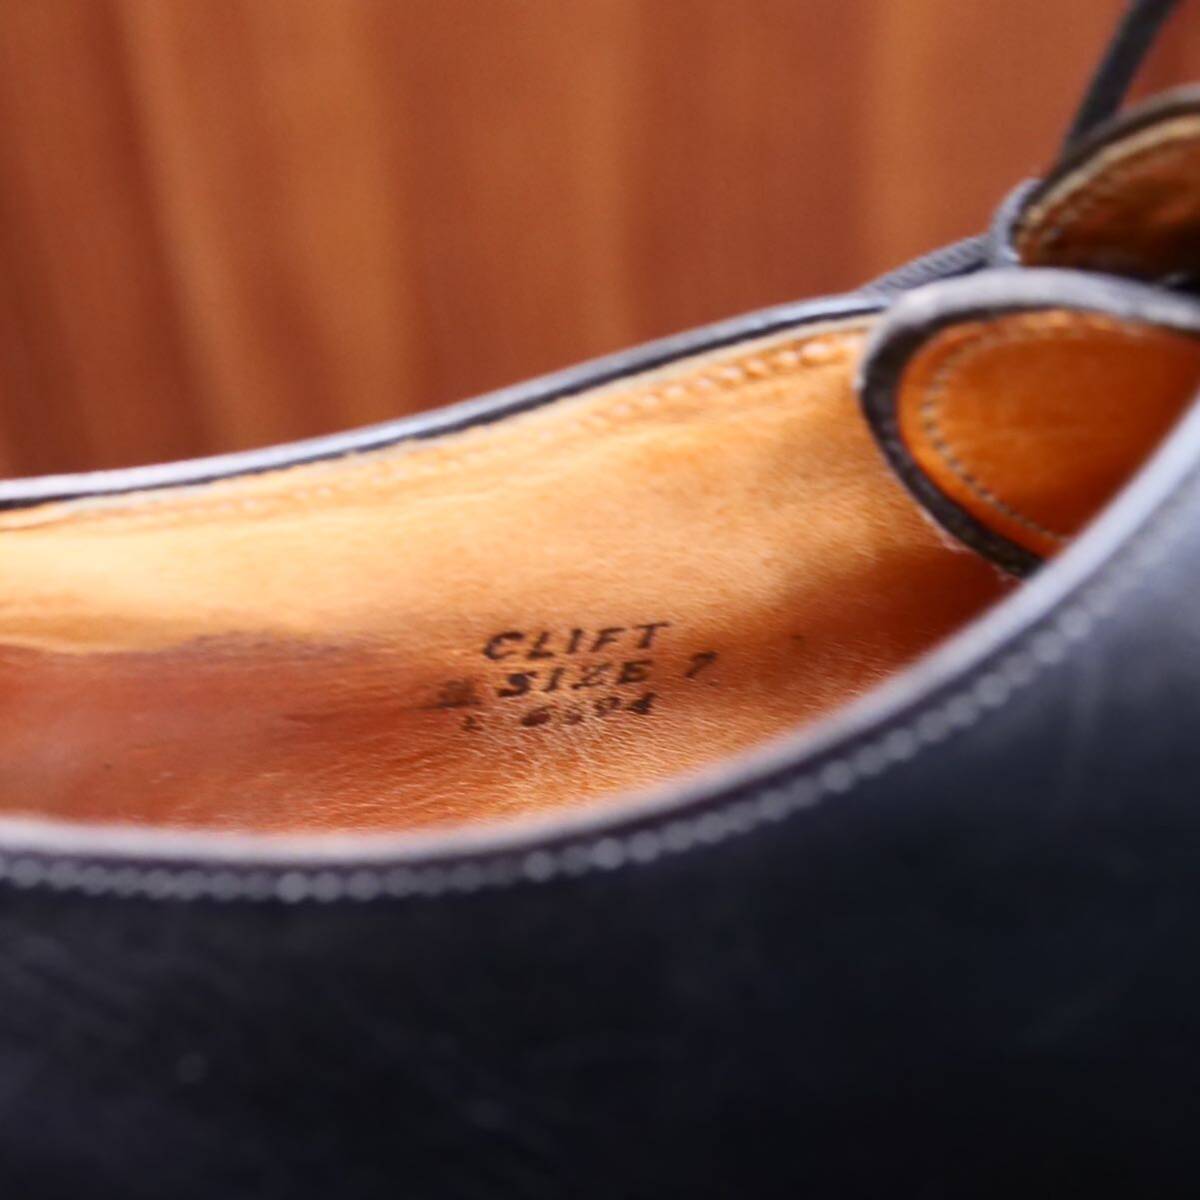  rare *[G.RODSON]ji- rod son side race shoes black UK7 business shoes men's leather shoes 